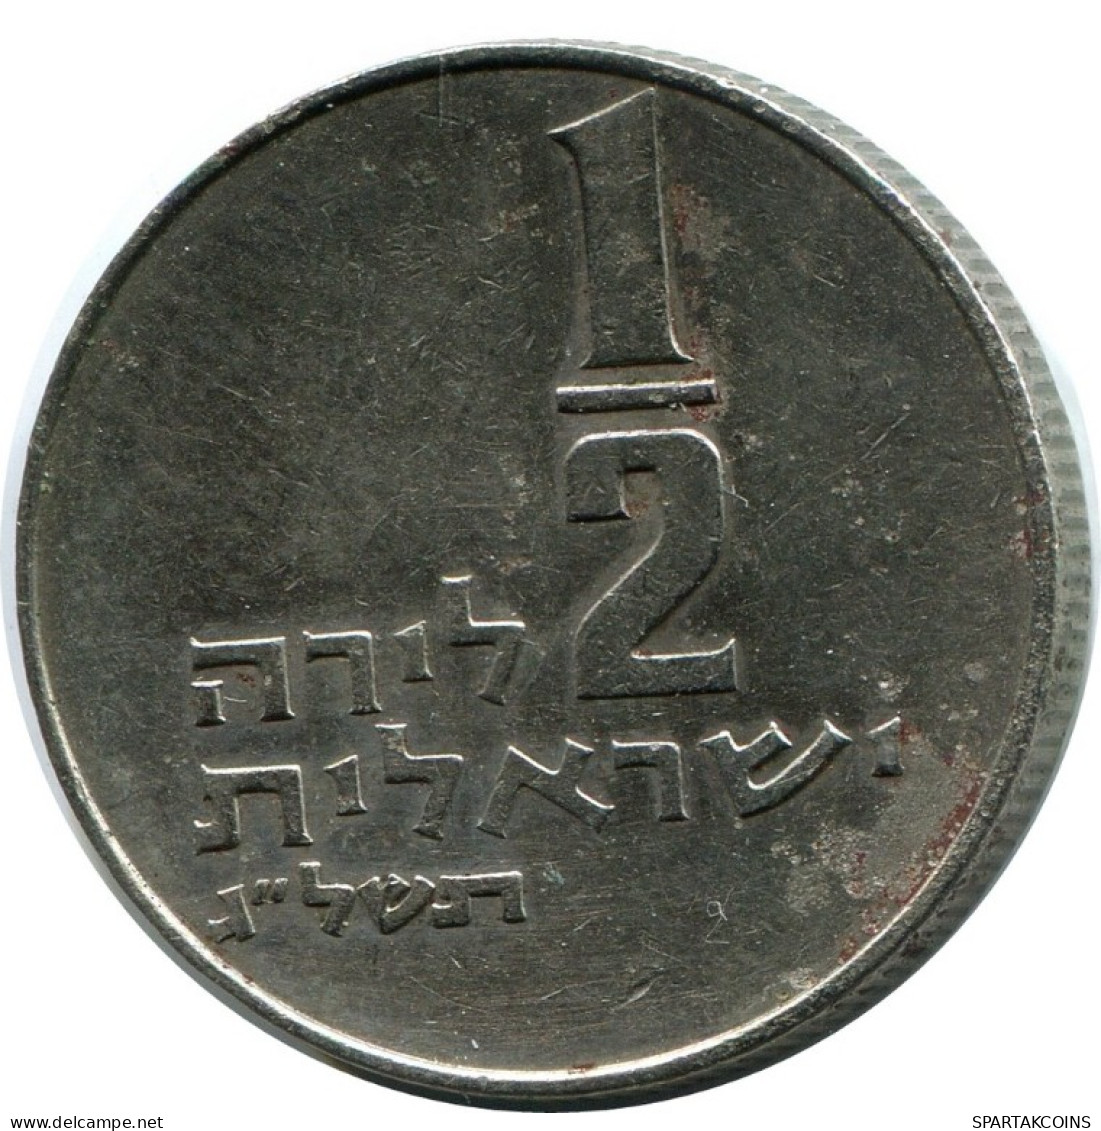 1/2 LIRA 1973 ISRAEL Coin #AH942.U.A - Israel